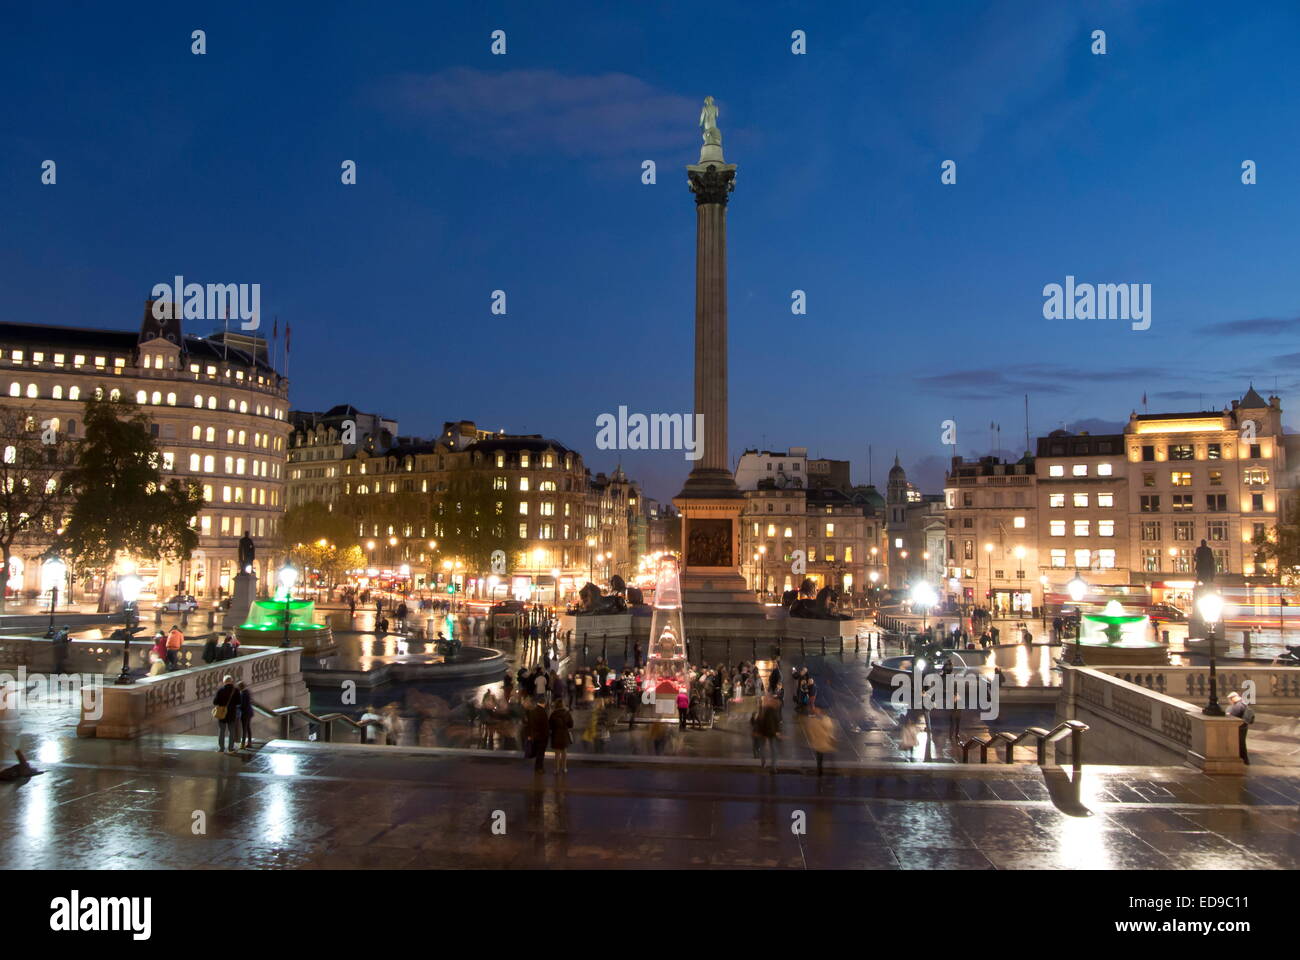 Nelson's Column on Trafalgar Square, Westminster, London, UK - dusk, winter Stock Photo